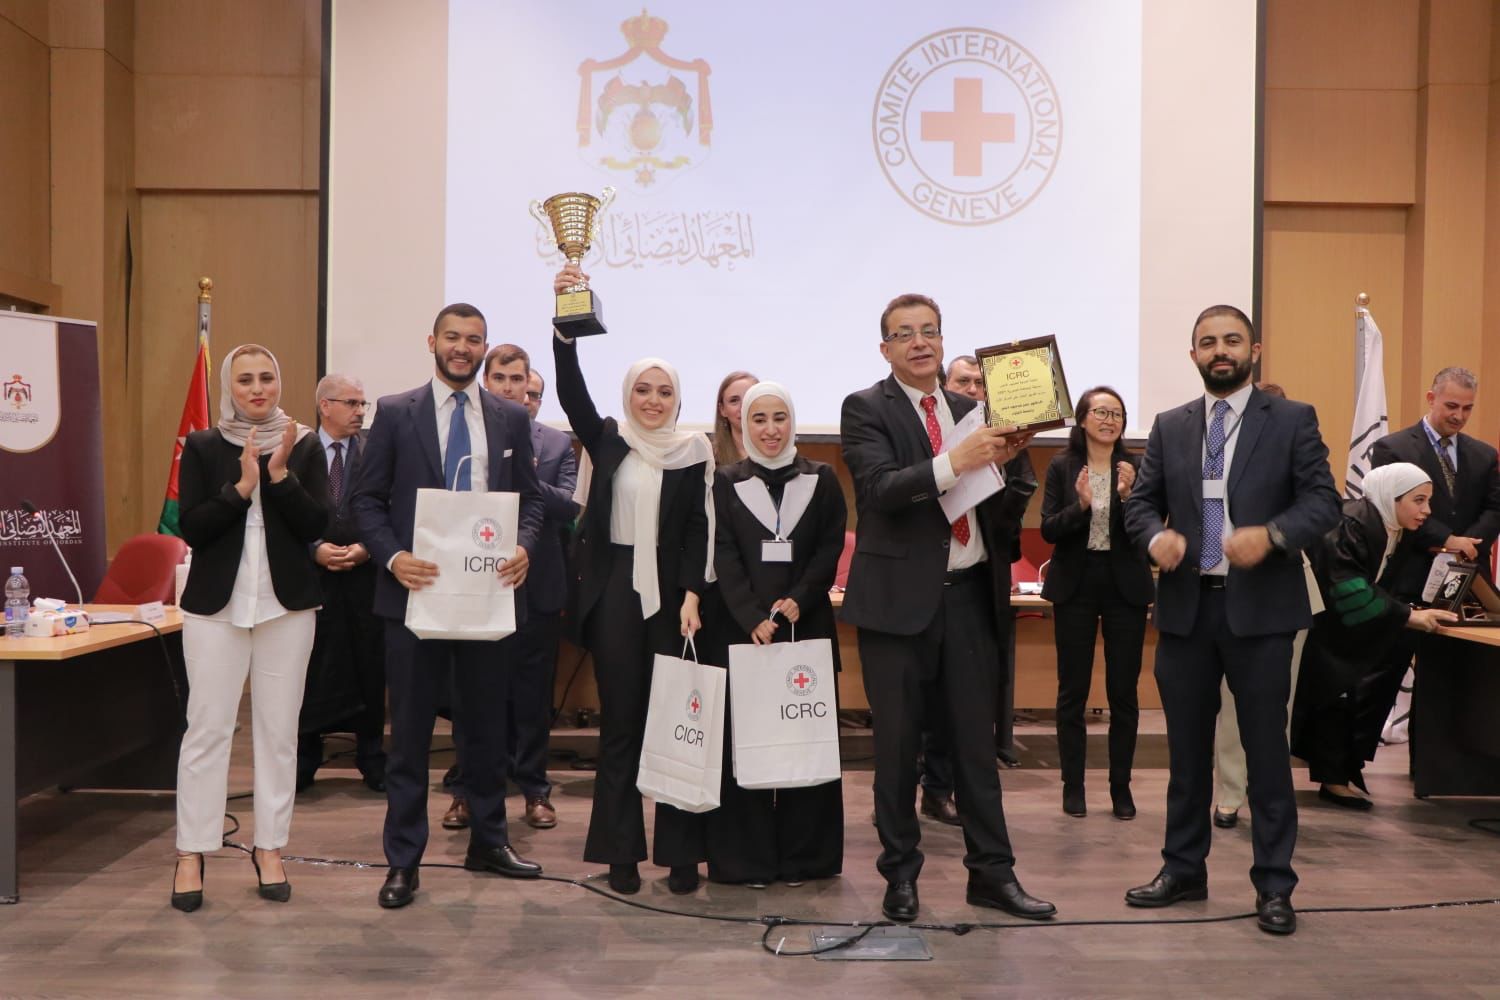 جامعة البترا تحرز كأس بطولة المحاكمة الصورية للجامعات الأردنية